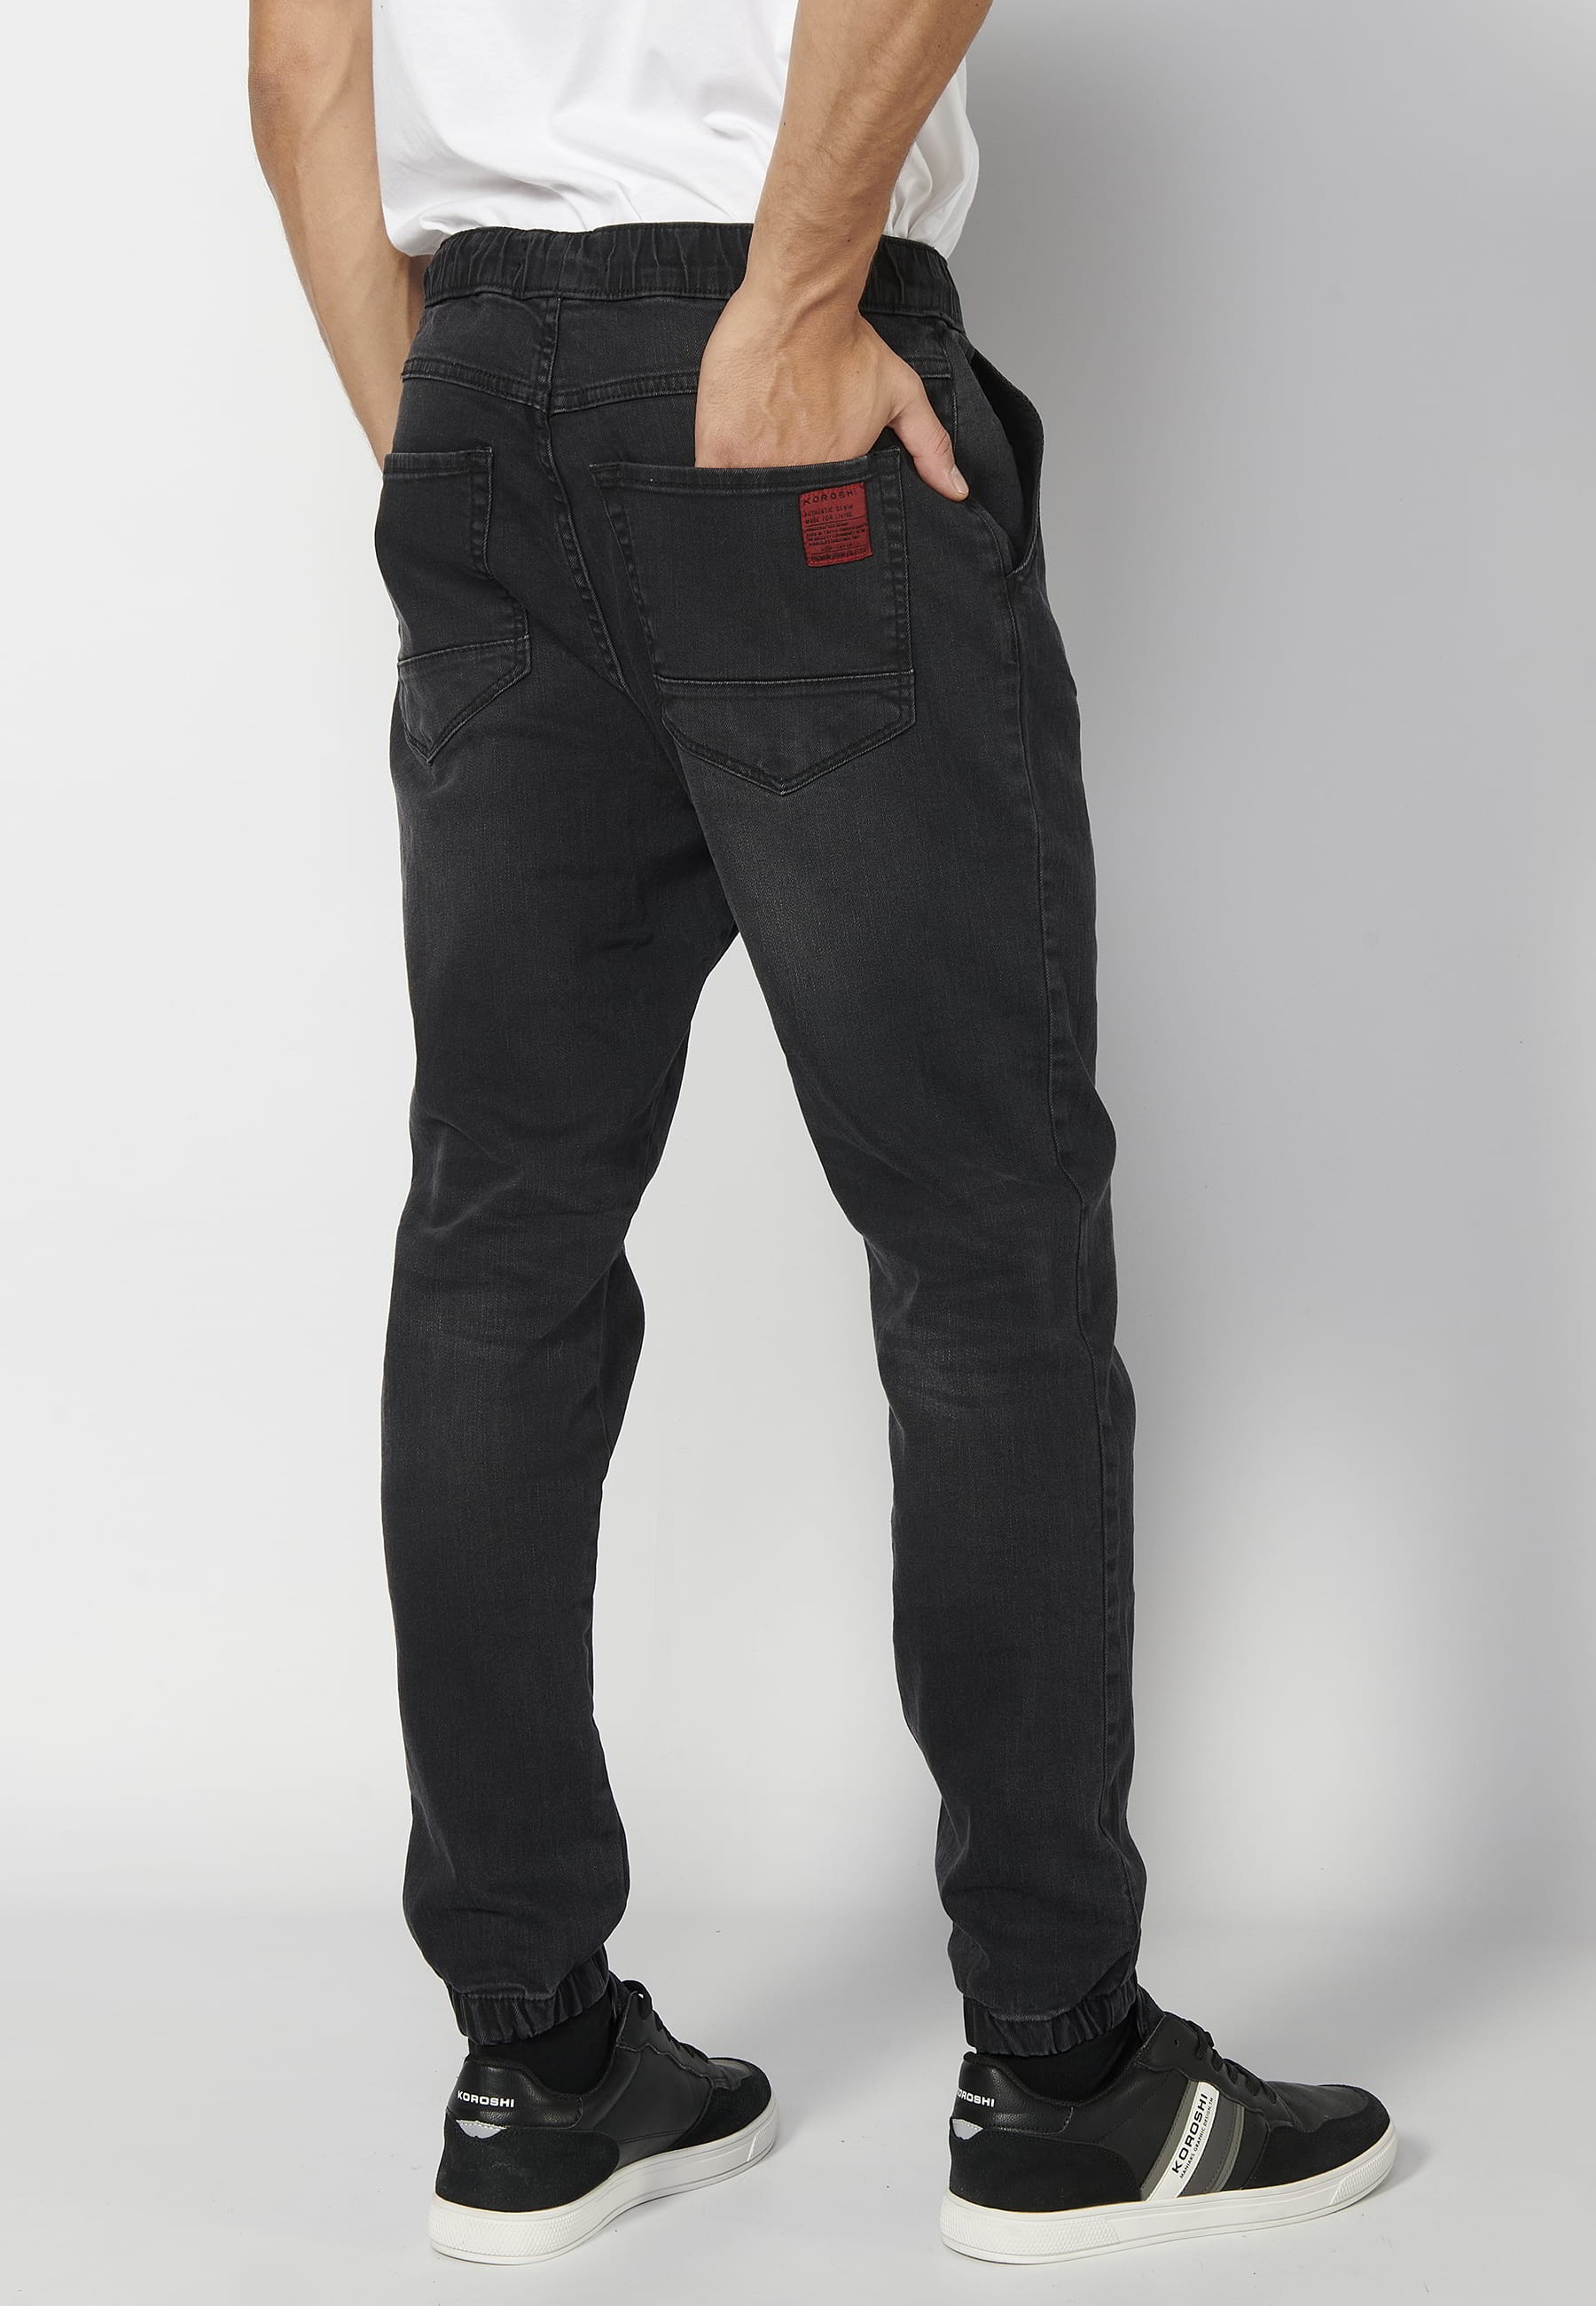 Pantalon de jogging long noir taille élastique pour Homme 4